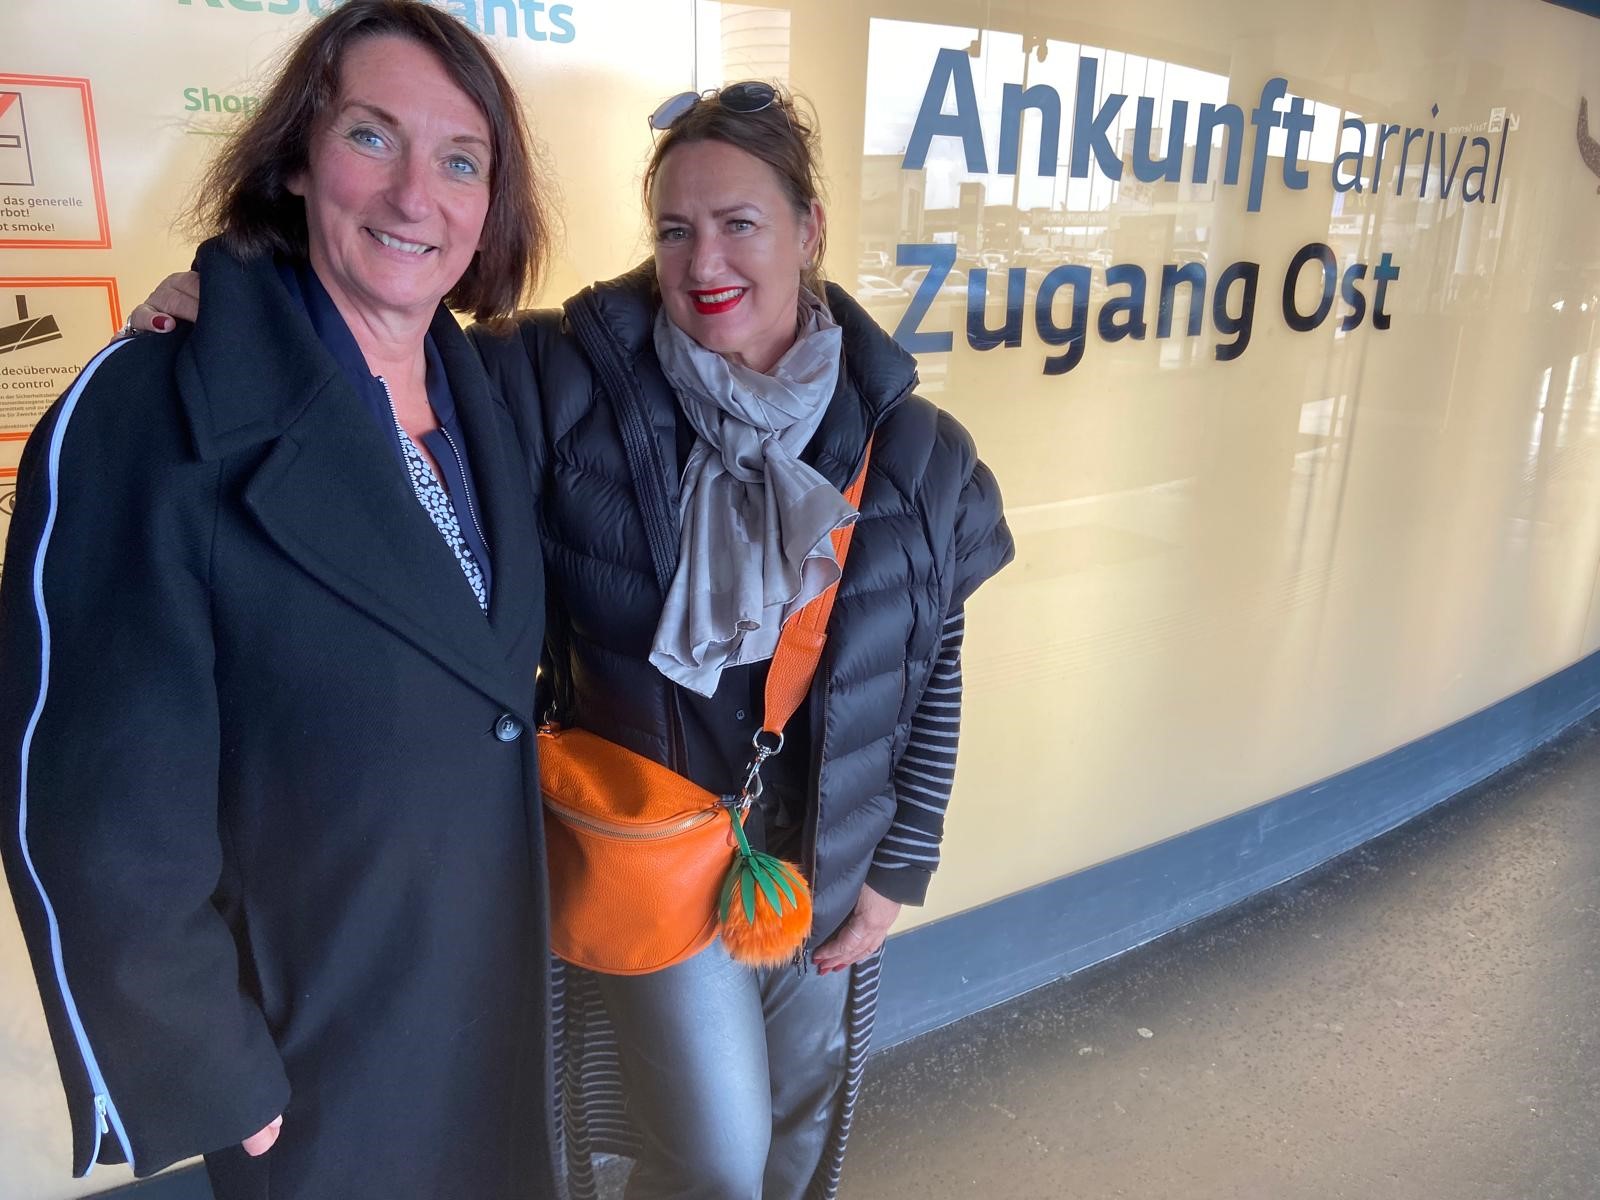  Im Bild: VDR-Geschäftsführerin Christiane Schillig und ÖRV-Präsidentin Susanne Beseler gestern Abend am Flughafen in Wien 